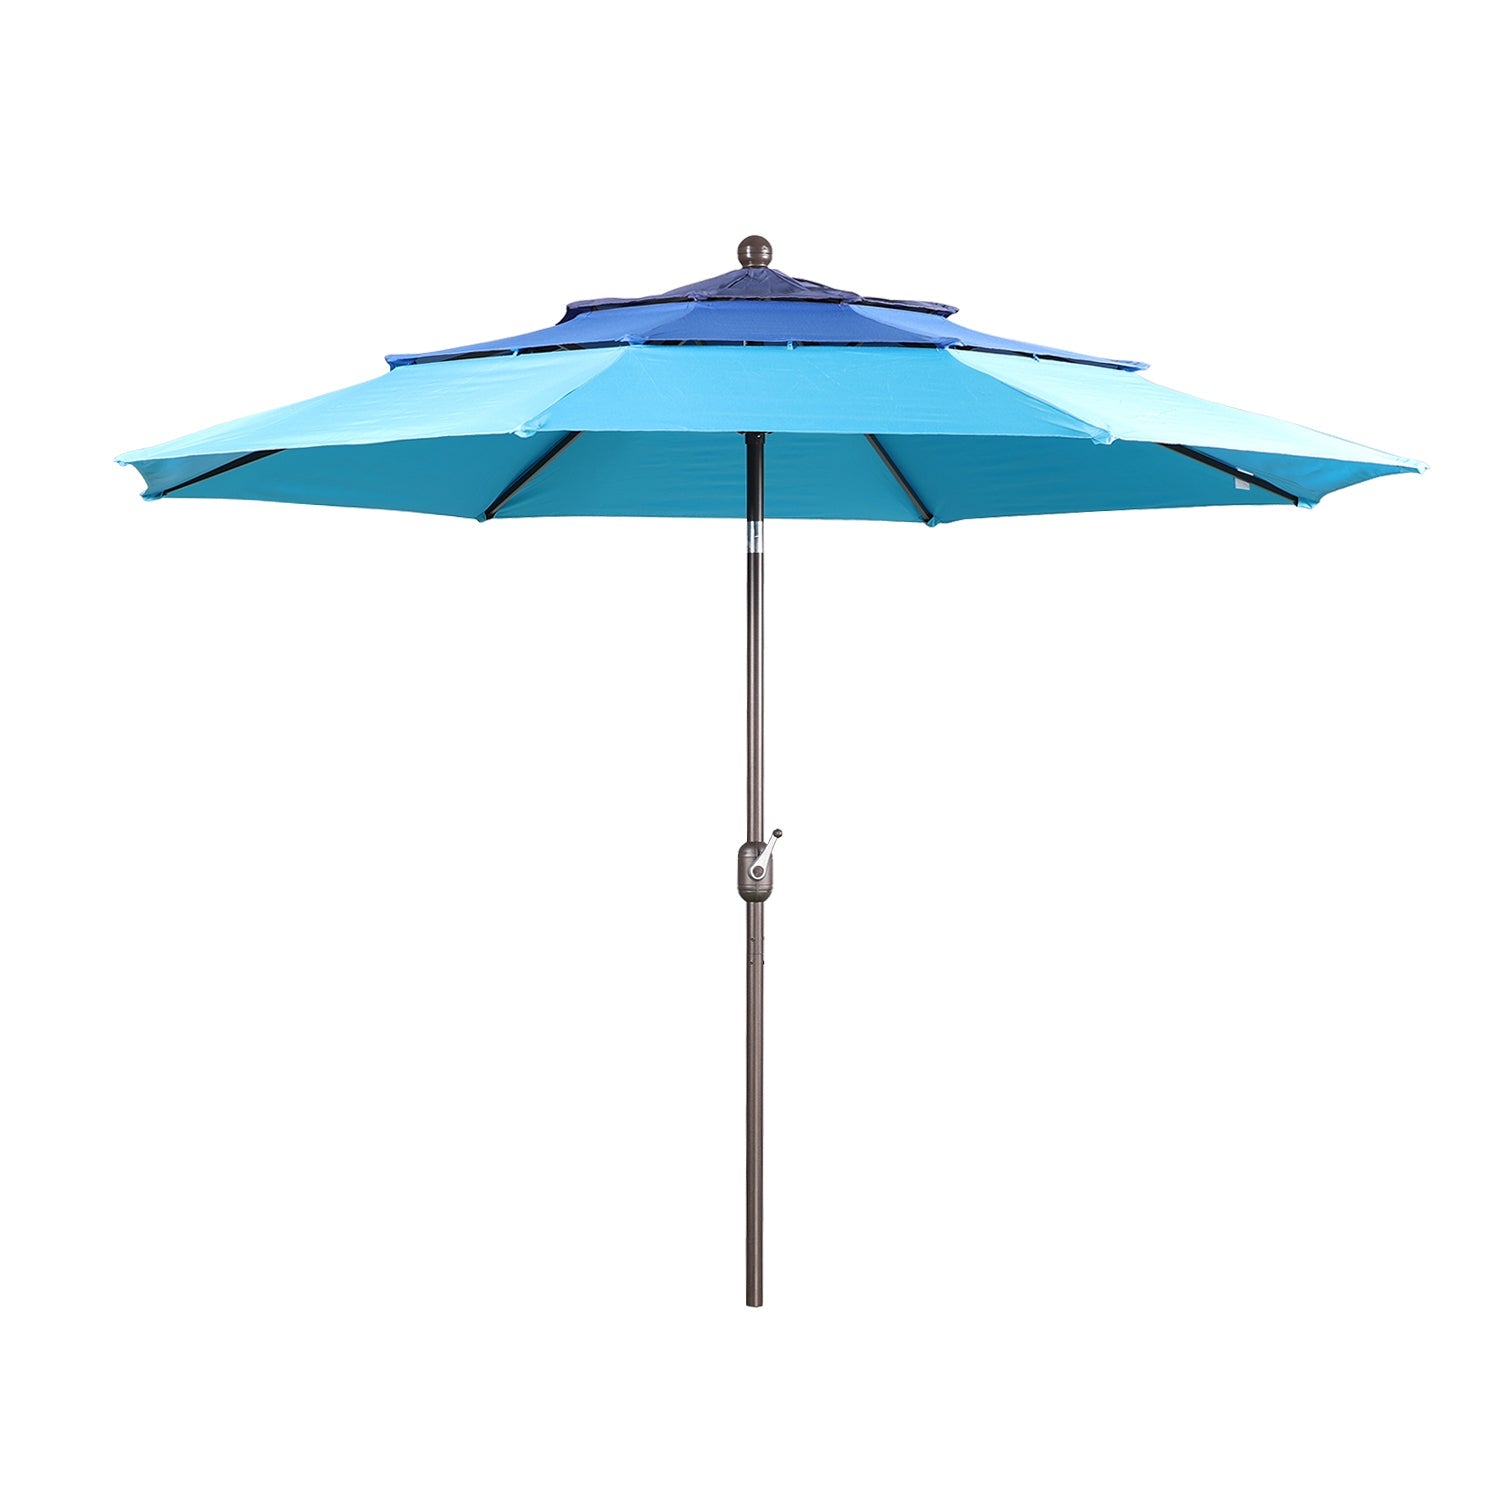 3 Tier 10ft. Patio Umbrella - Market Umbrella with Crank (No Base) Patio Umbrella Aoodor Blue  